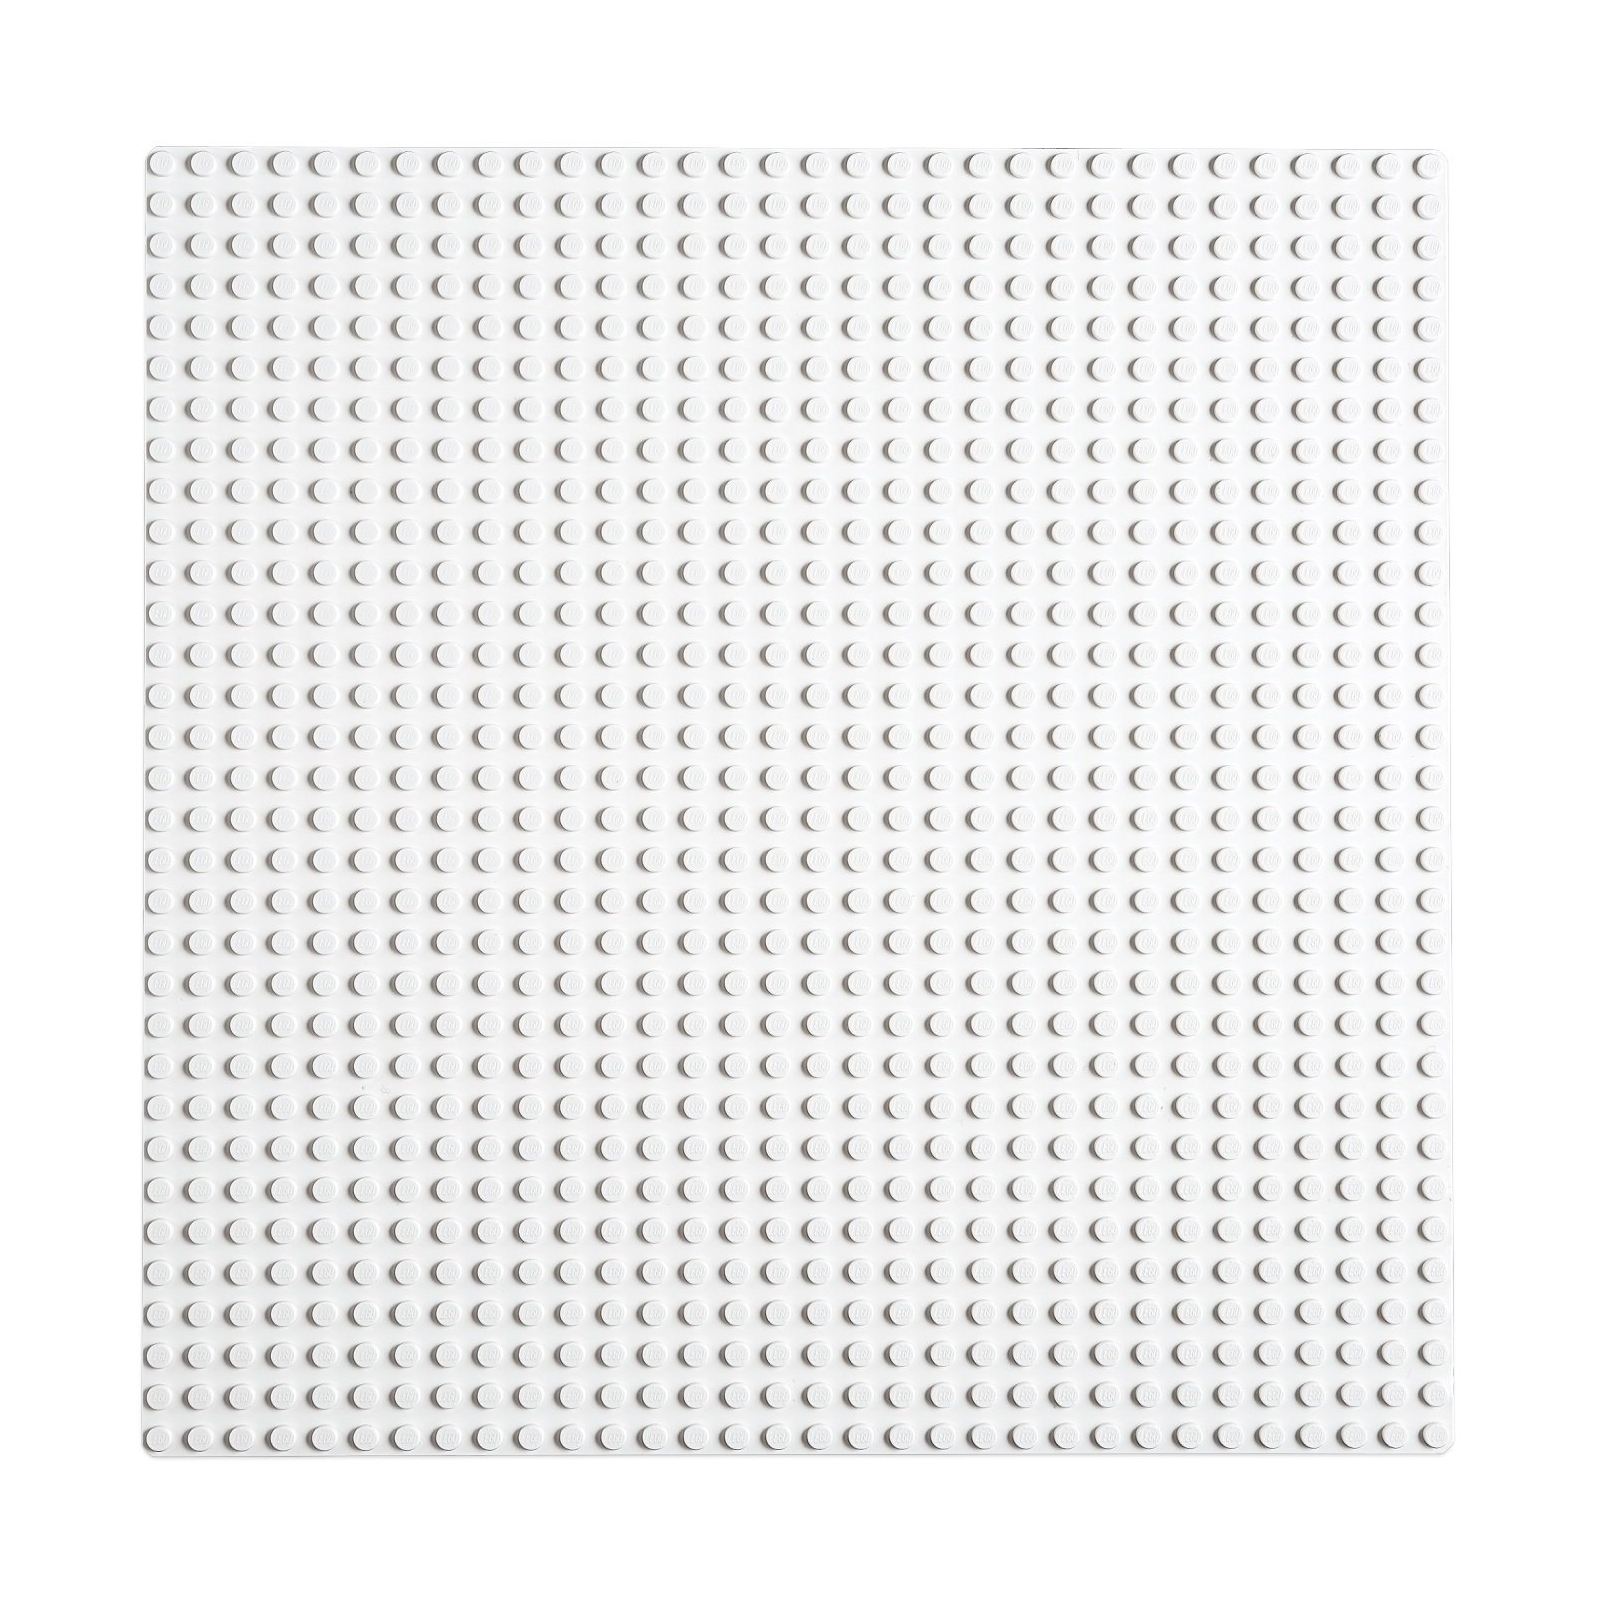 Конструктор LEGO Classic Базовая пластина белого цвета (11026) изображение 4